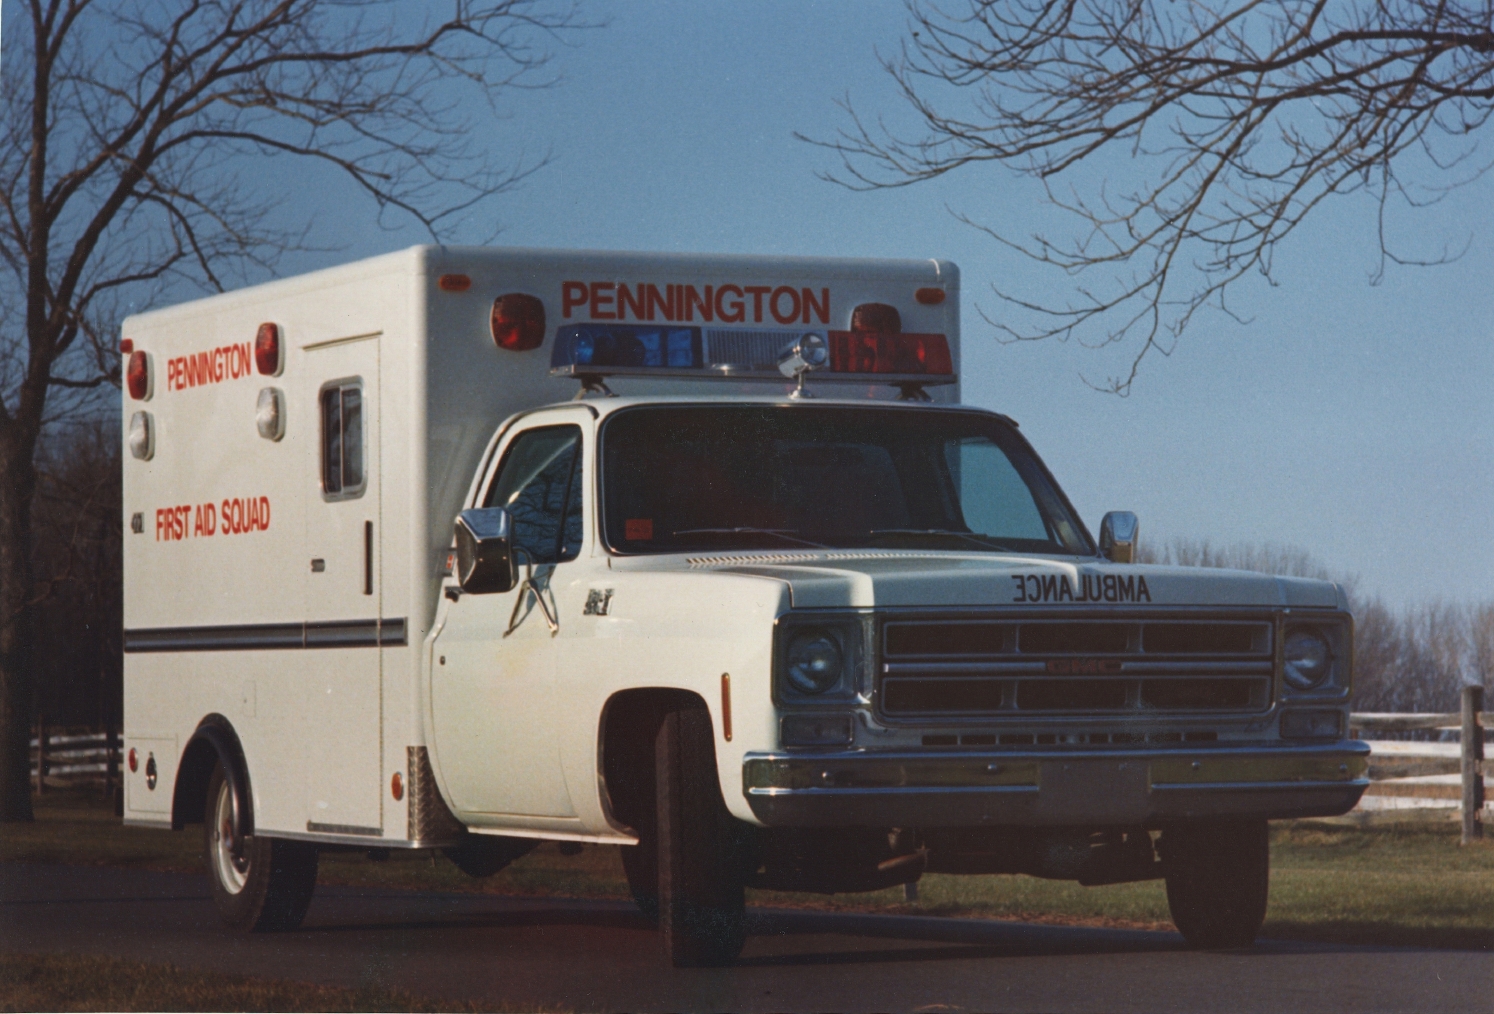 GMC Ambulance